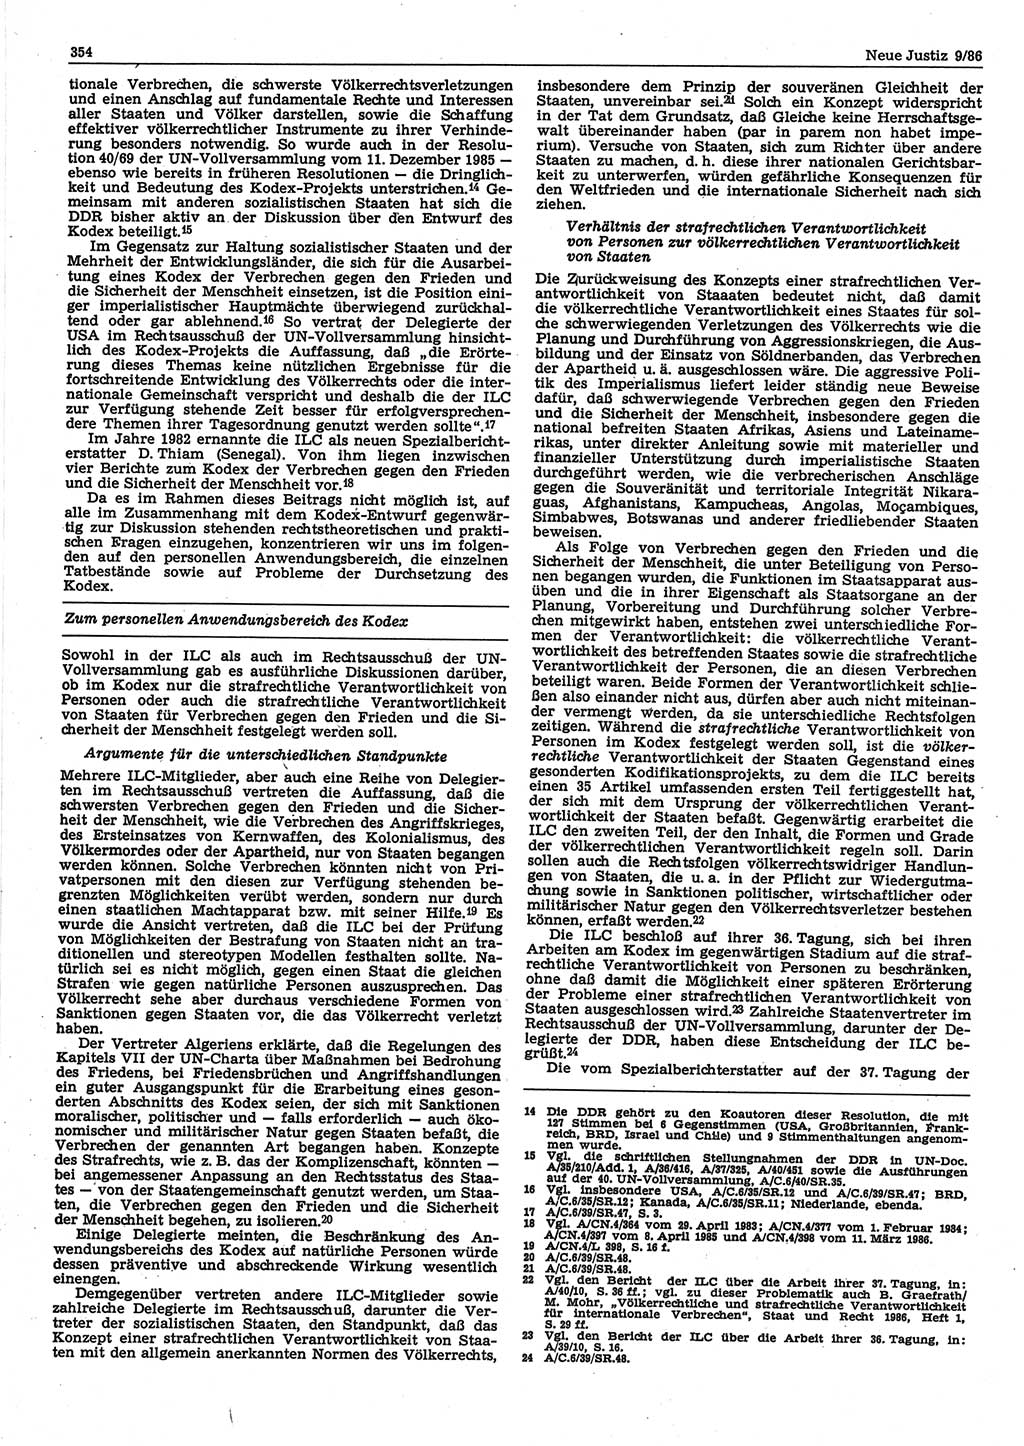 Neue Justiz (NJ), Zeitschrift für sozialistisches Recht und Gesetzlichkeit [Deutsche Demokratische Republik (DDR)], 40. Jahrgang 1986, Seite 354 (NJ DDR 1986, S. 354)